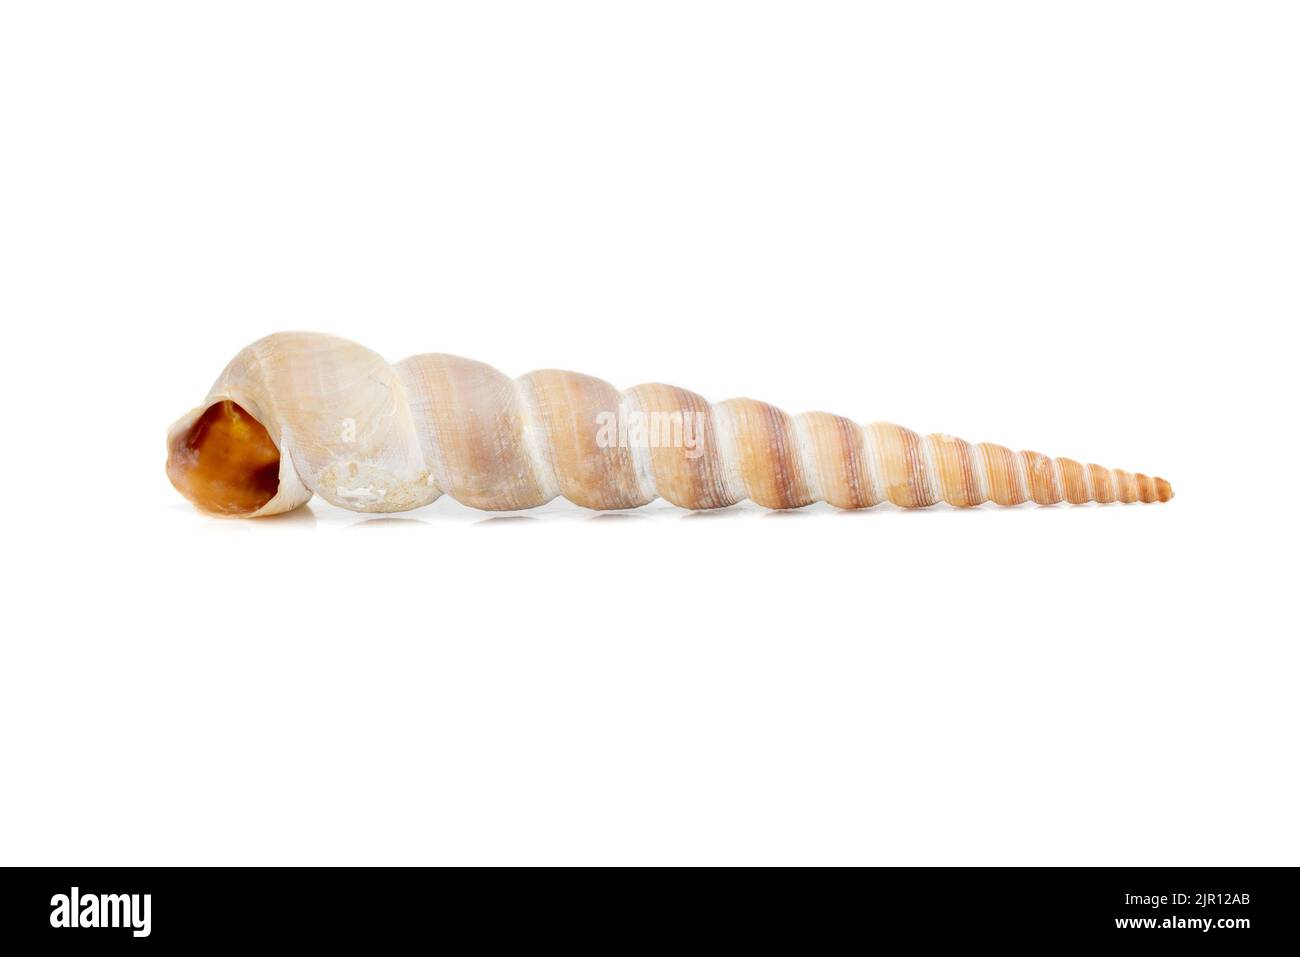 Image d'une coquille conique pointue (Terebridae) sur fond blanc. Animaux sous-marins. Coquillages. Banque D'Images